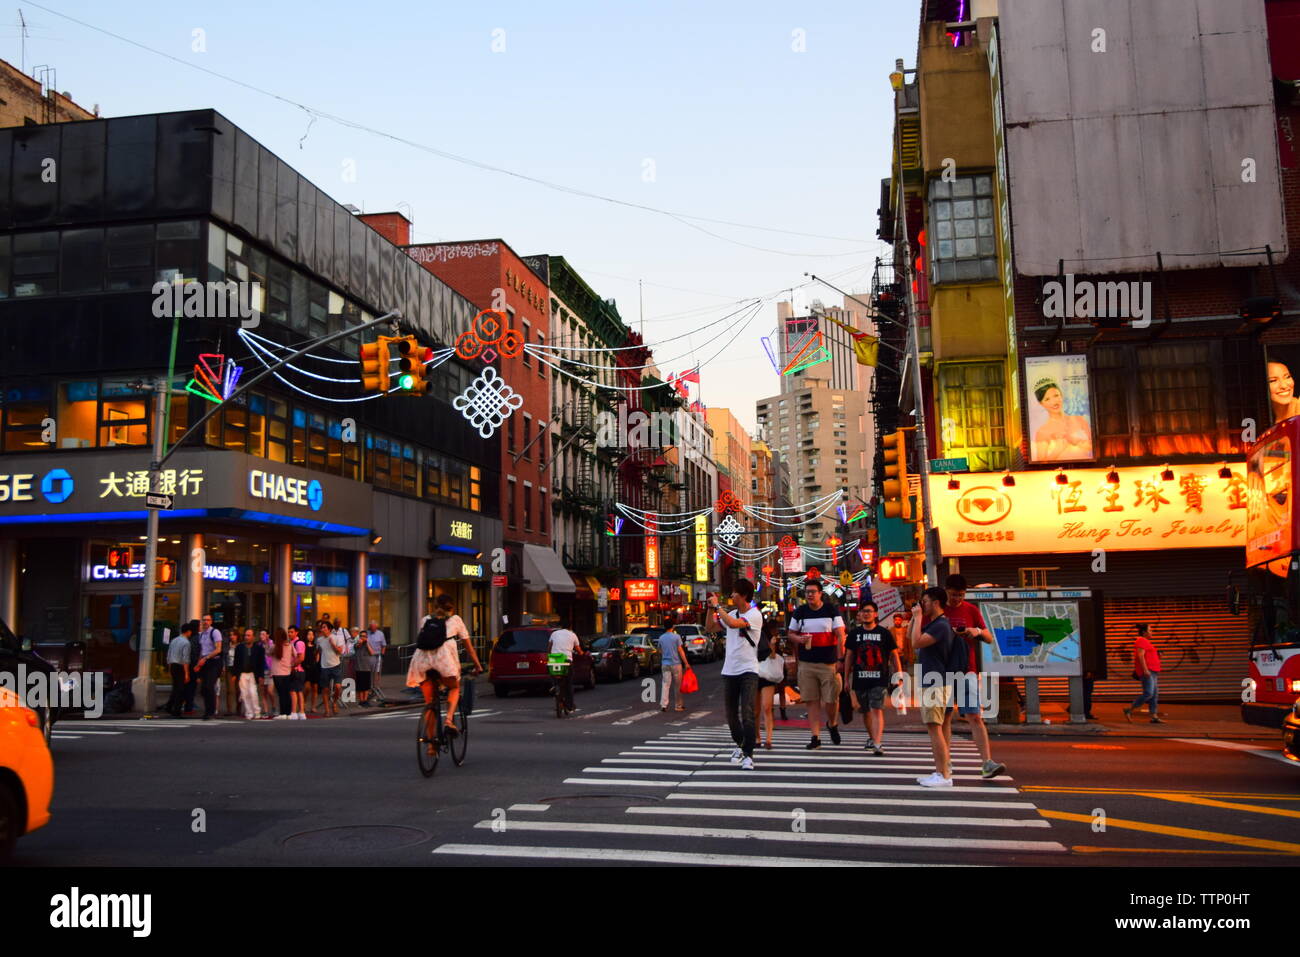 chinatown new york city - street scene may 2018 Stock Photo